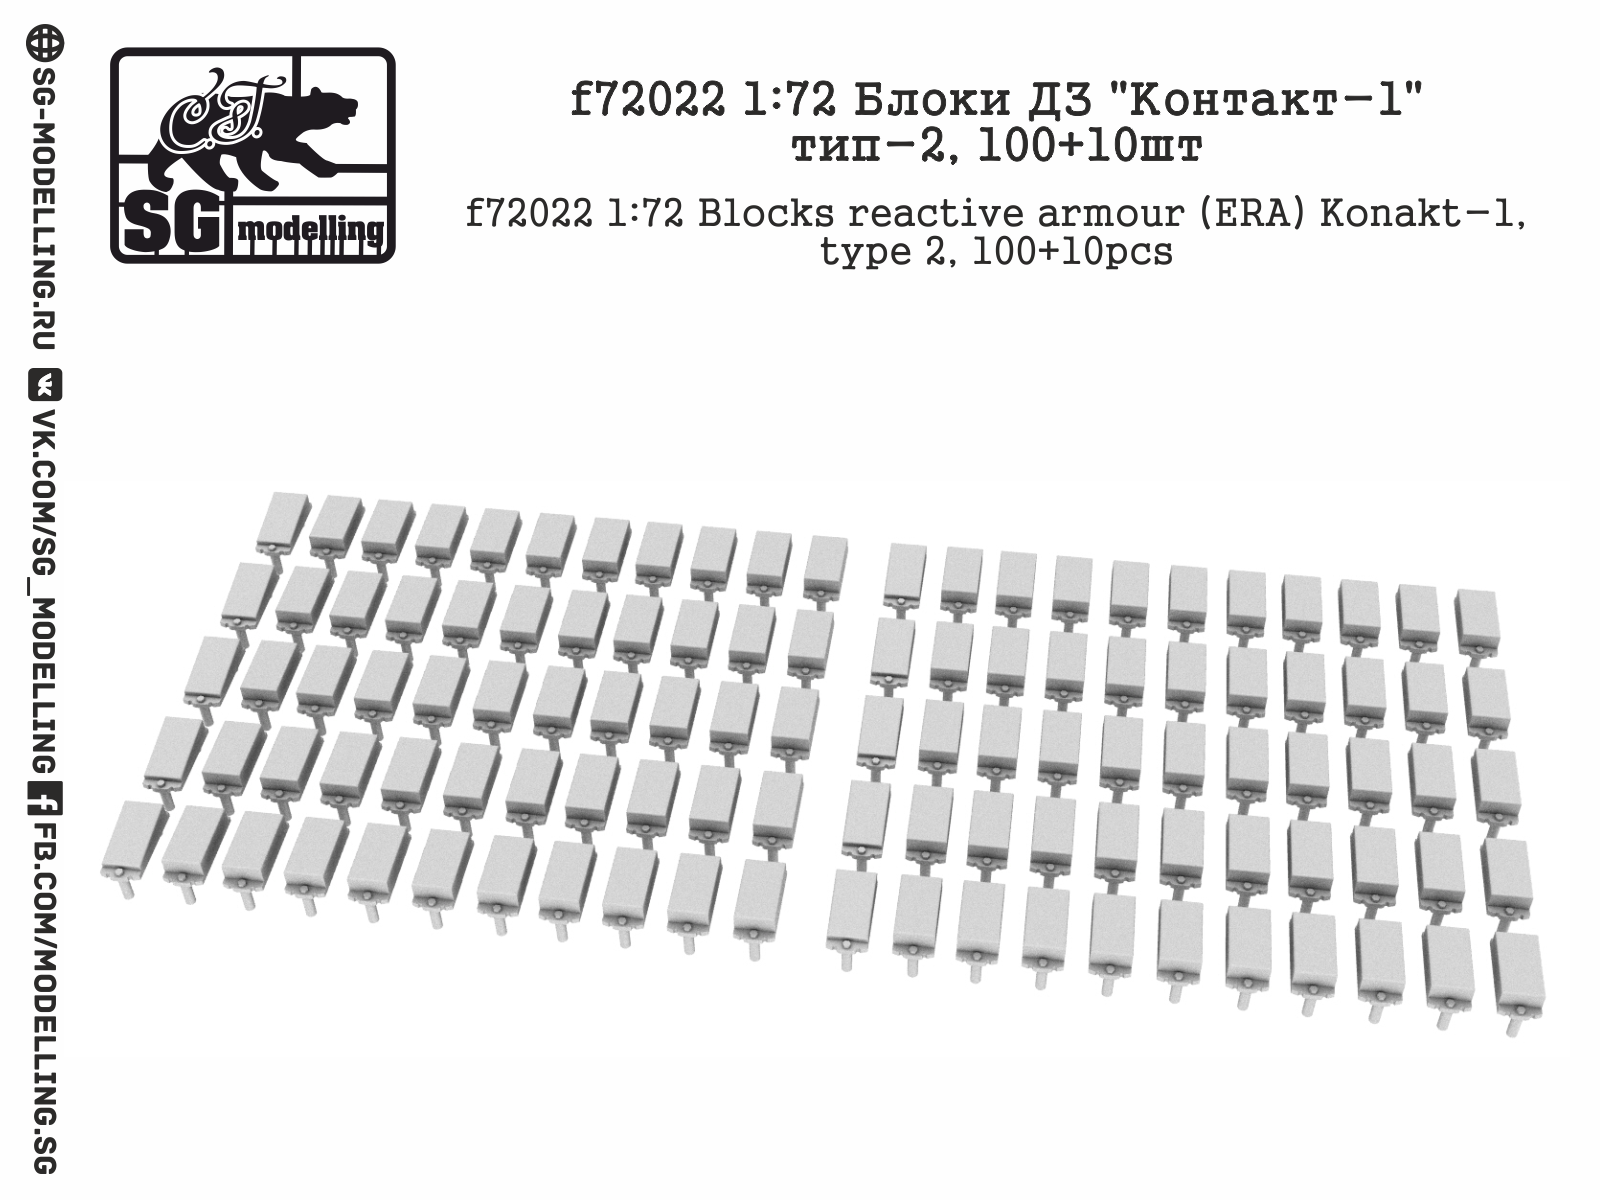 ERA blocks reactive armour Konakt-1 - type 2 (100+10pc)